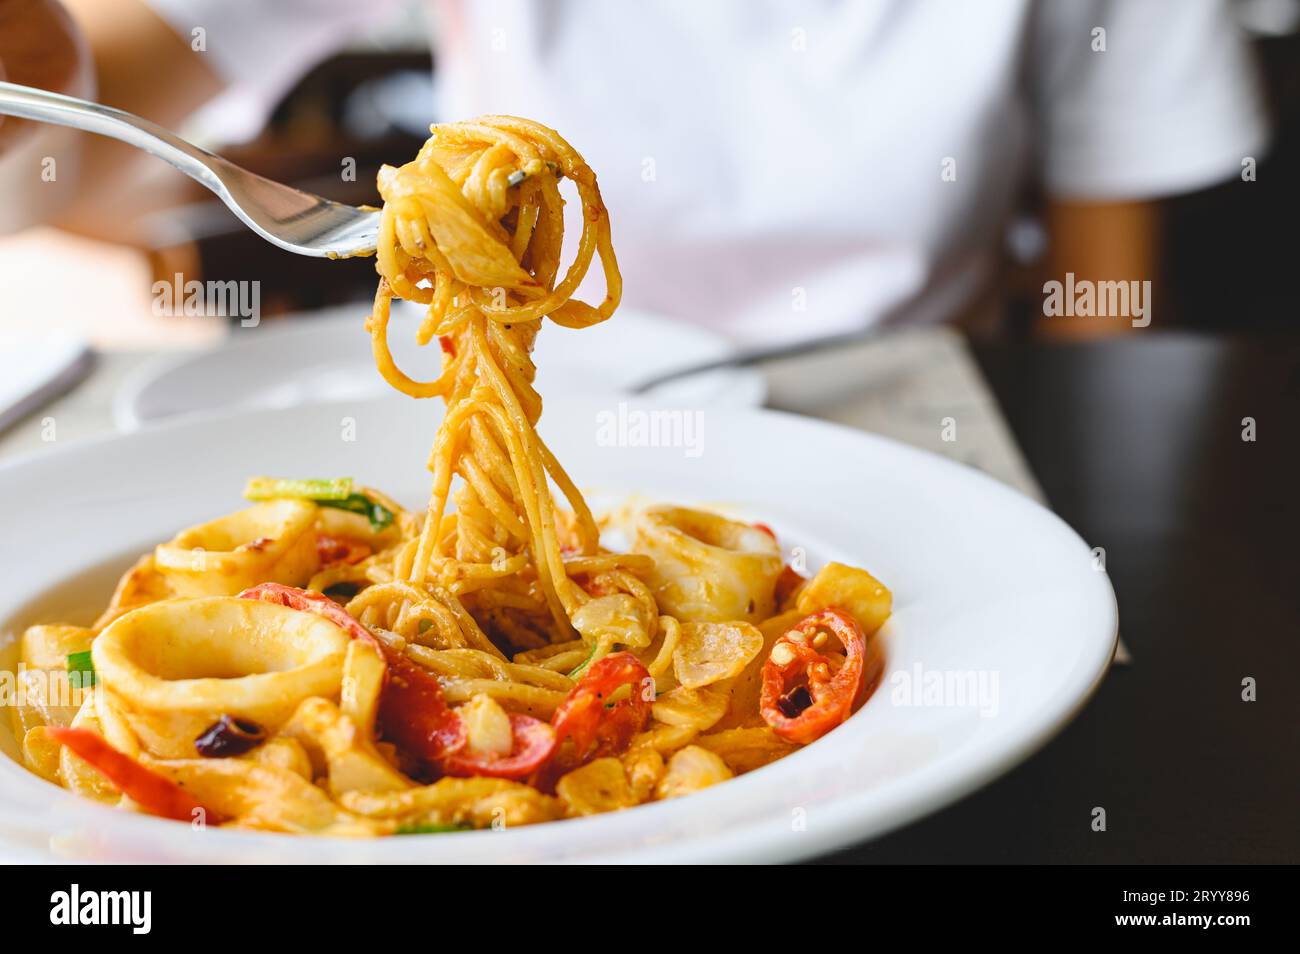 Frau essen Meeresfrüchte Spaghetti weiße Sauce mit einer Gabel im italienischen Restaurant. Essen und Küche Konzept. Stockfoto